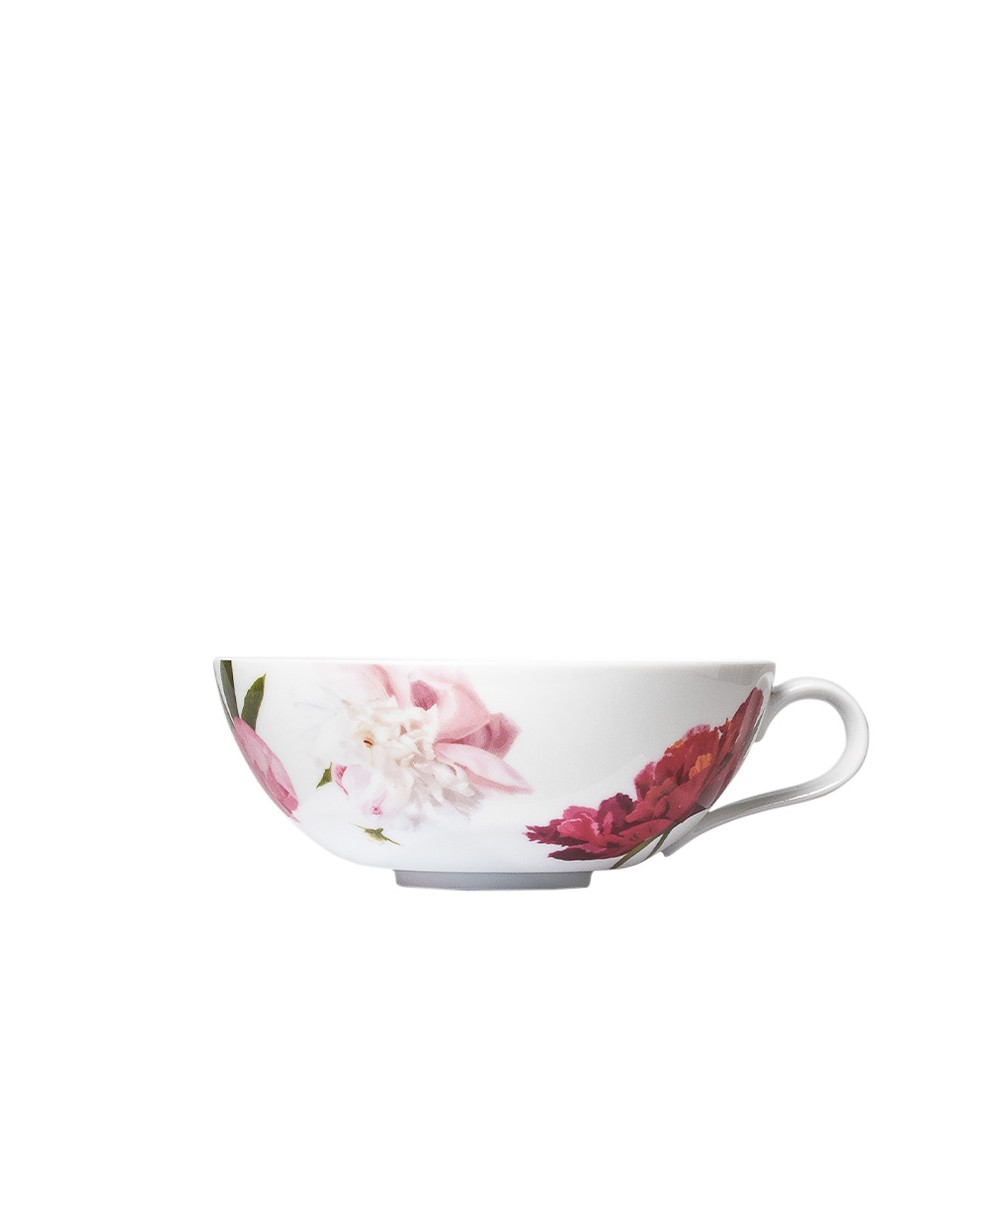 Produktbild, das die Teetasse der Paraiso-Serie von Sieger by Fürstenberg zeigt